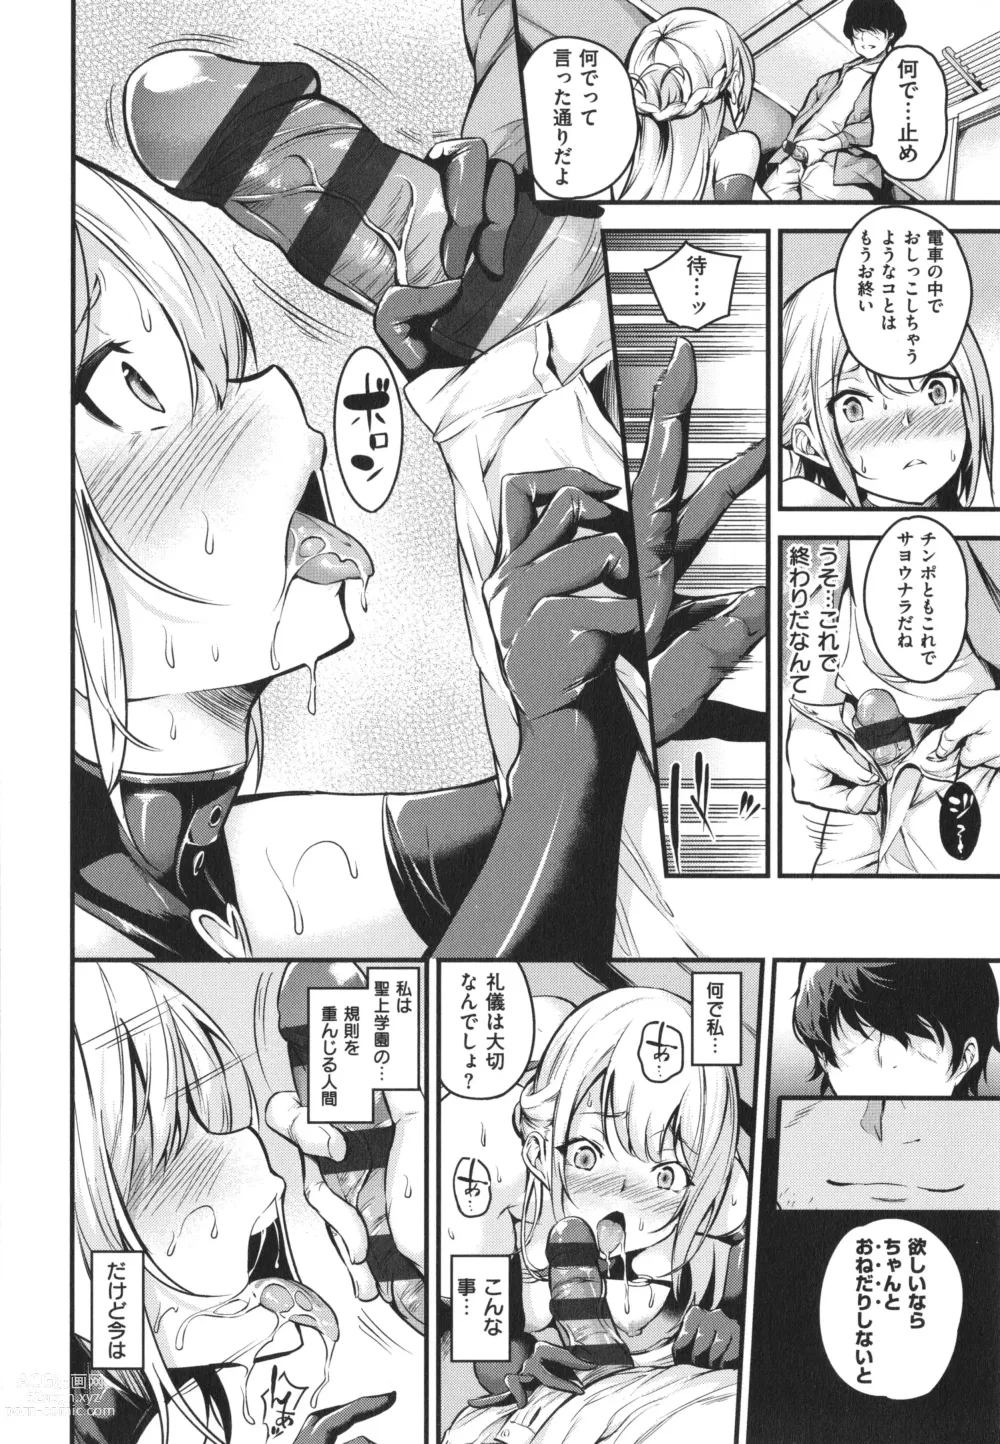 Page 26 of manga Mesutoiro